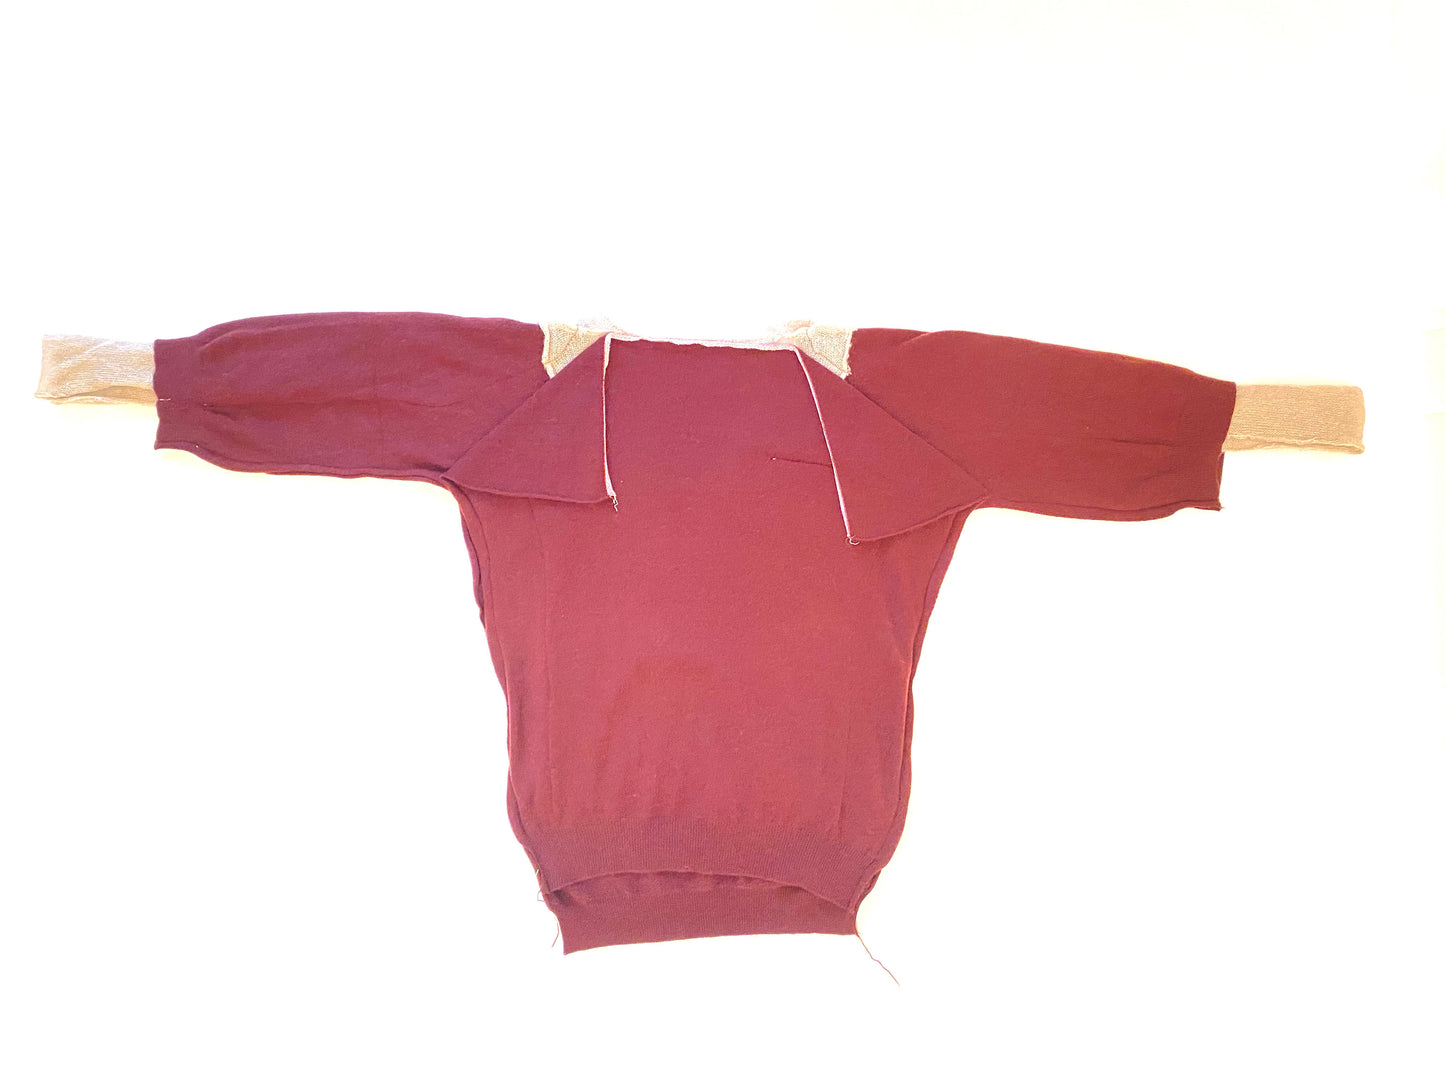 Sweater Andromaca 3